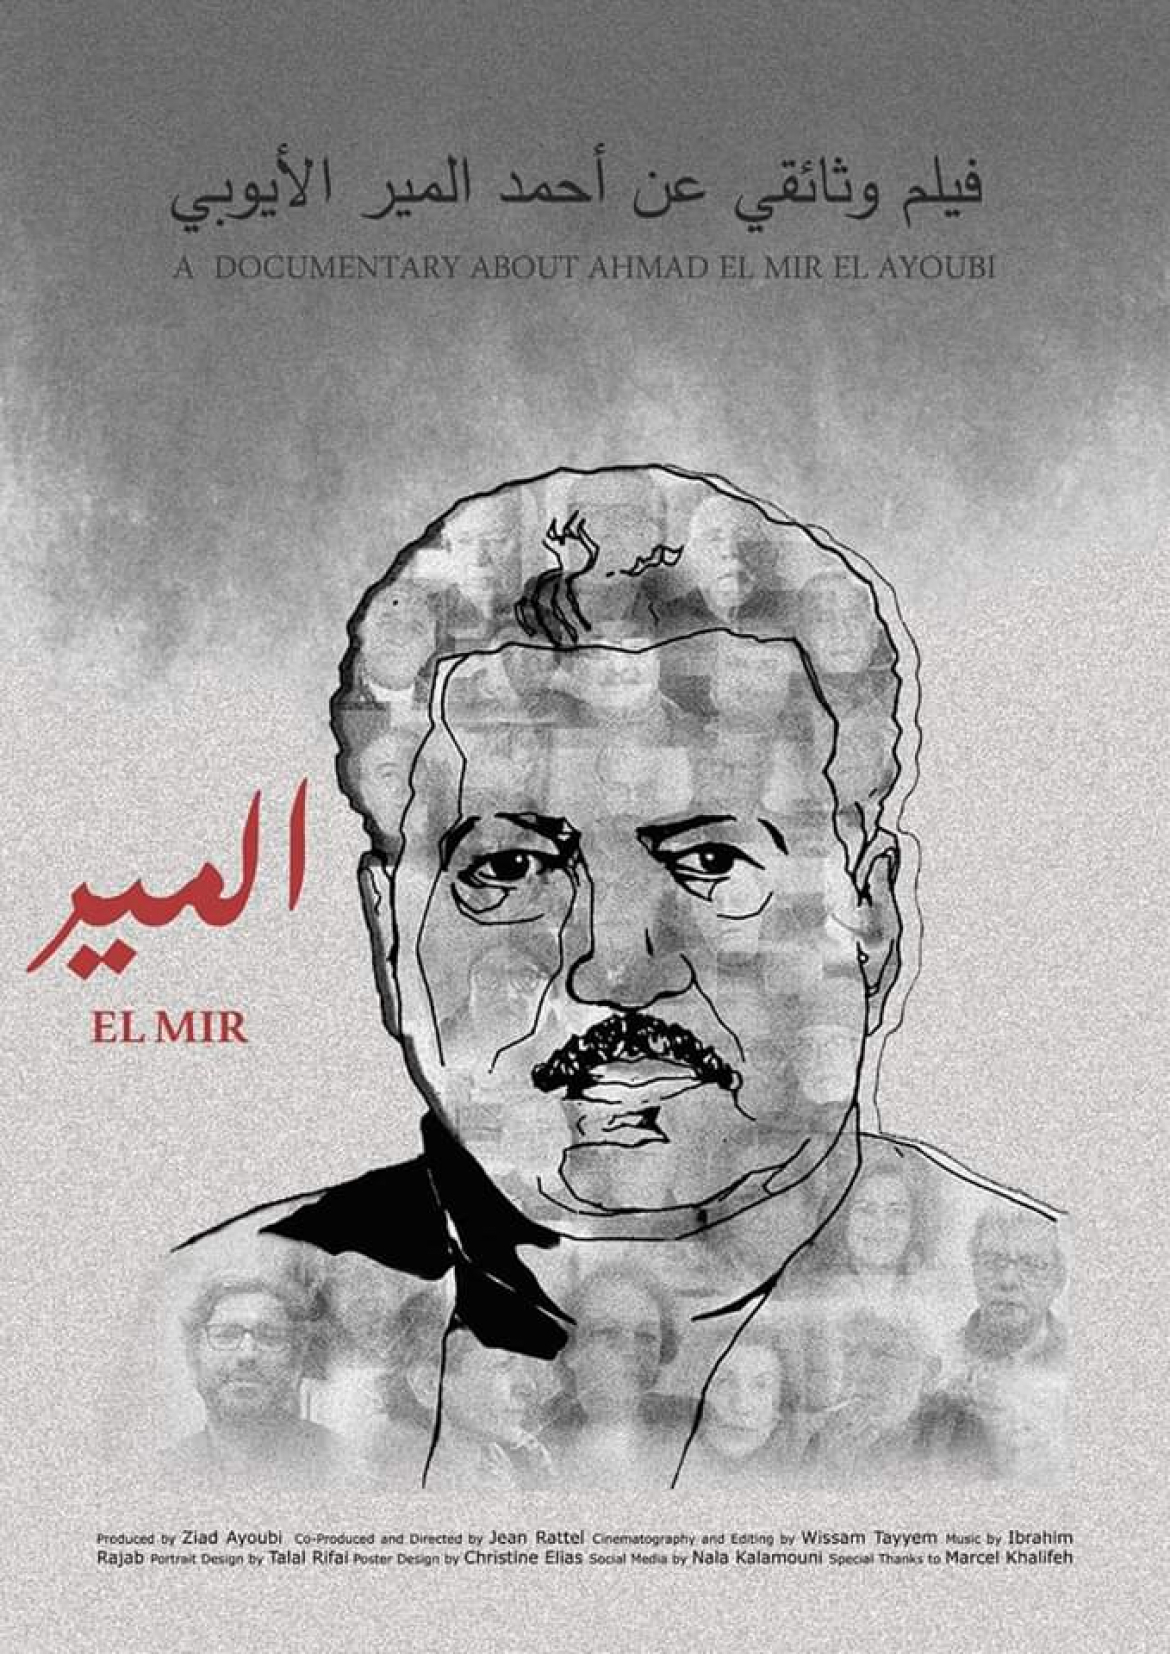 فيلم وثائقي لجان رطل عن المناضل الشيوعي الشهيد أحمد المير الأيوبي "